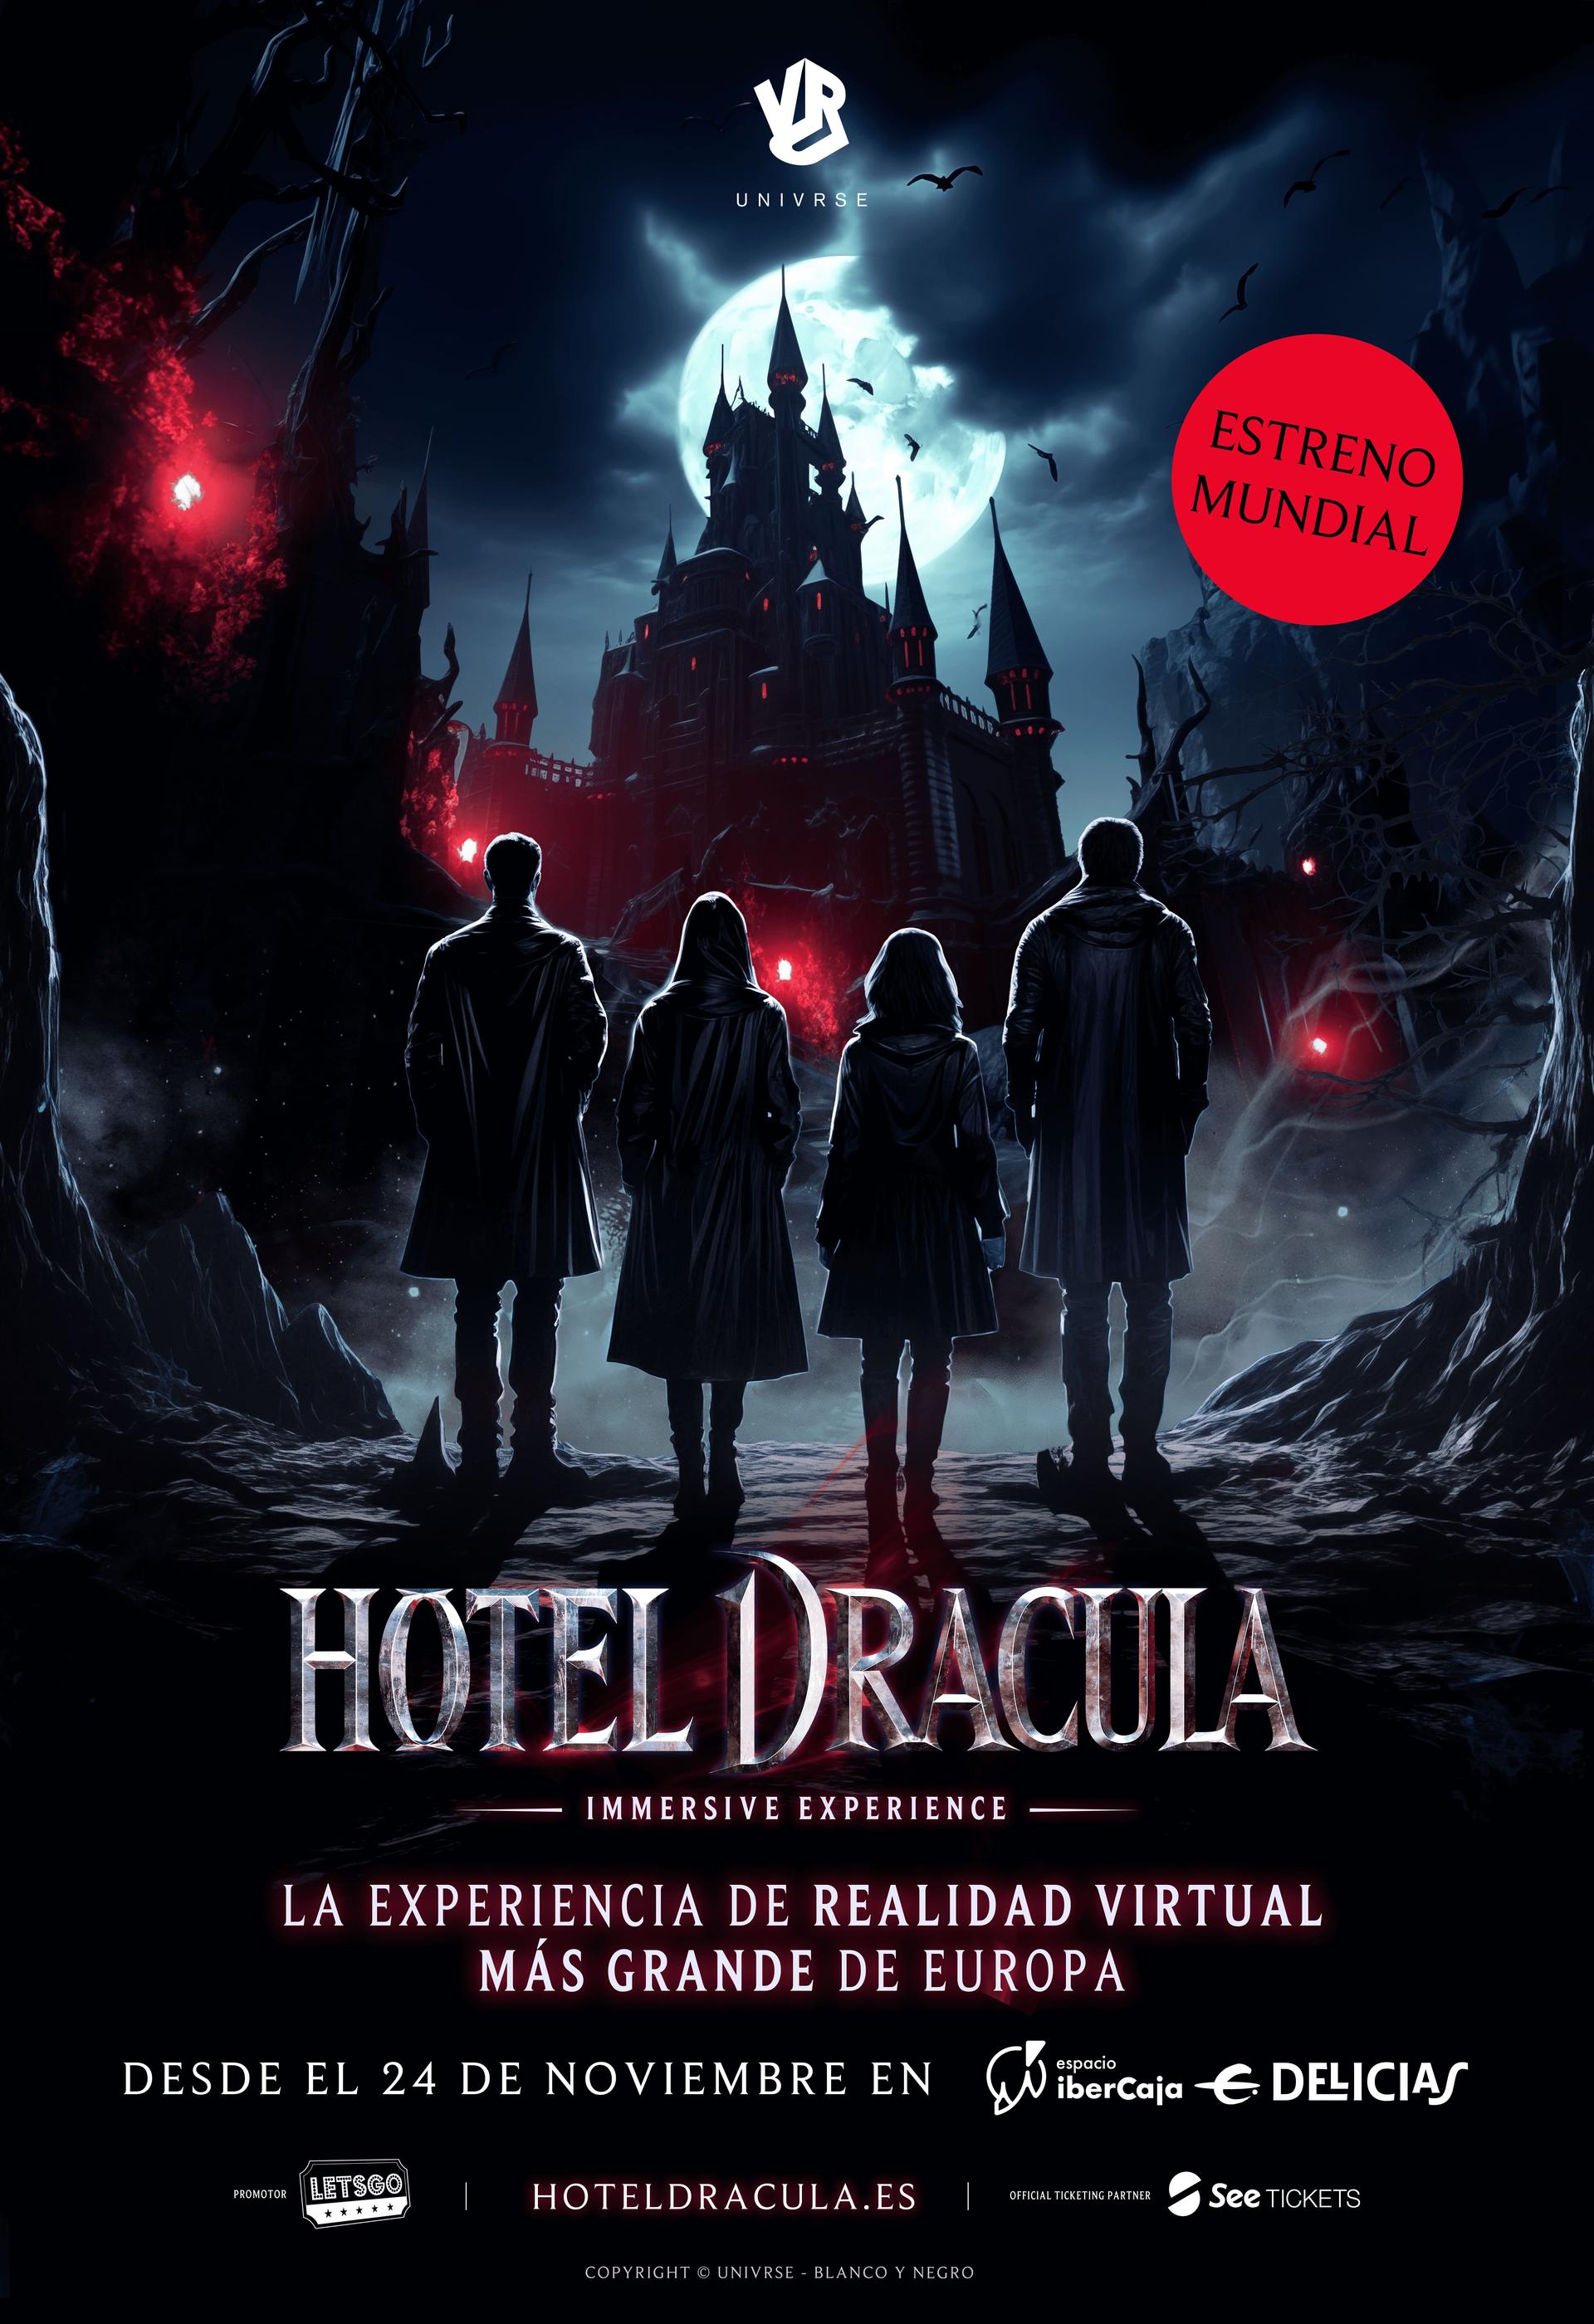 Hotel Drácula, el fenómeno de realidad virtual, se estrena en Madrid con  una pesadilla colectiva inspirada en los clásicos de terror · LH Magazin